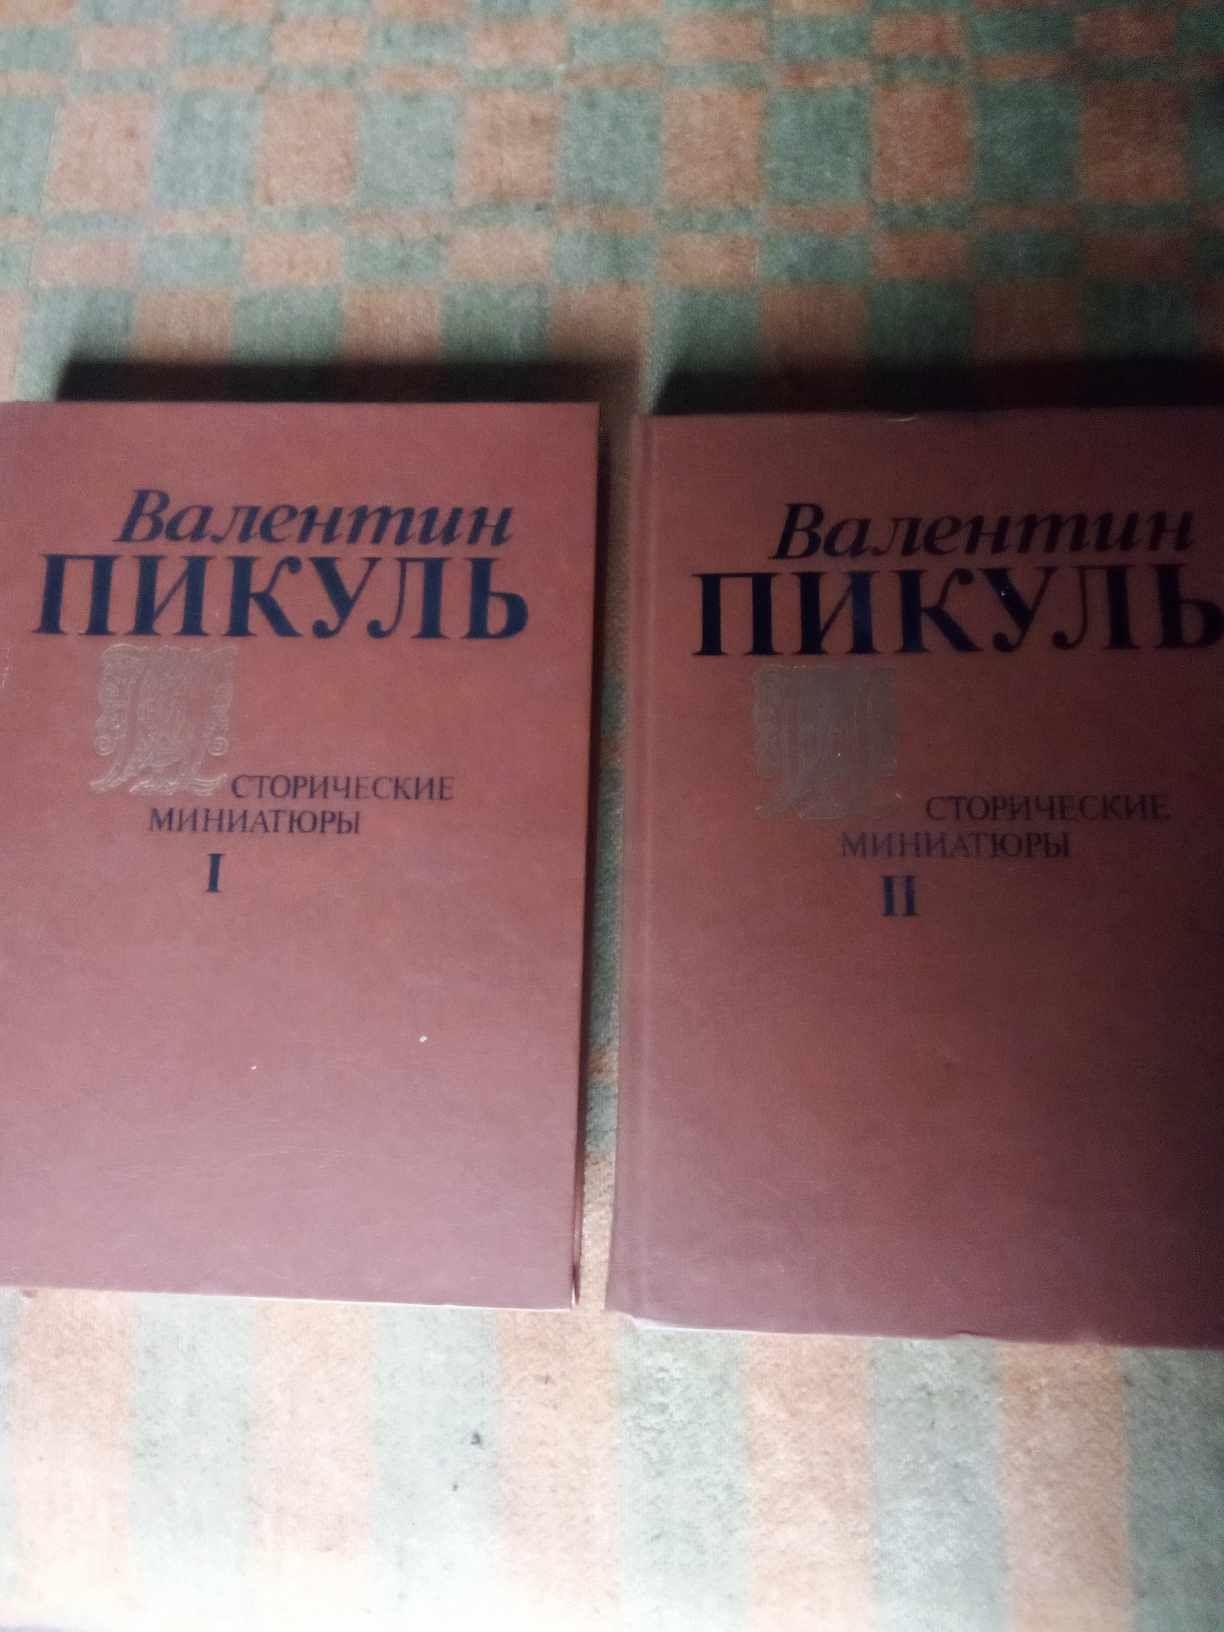 Продам Исторические миниатюры В. Пикуля в двух томах